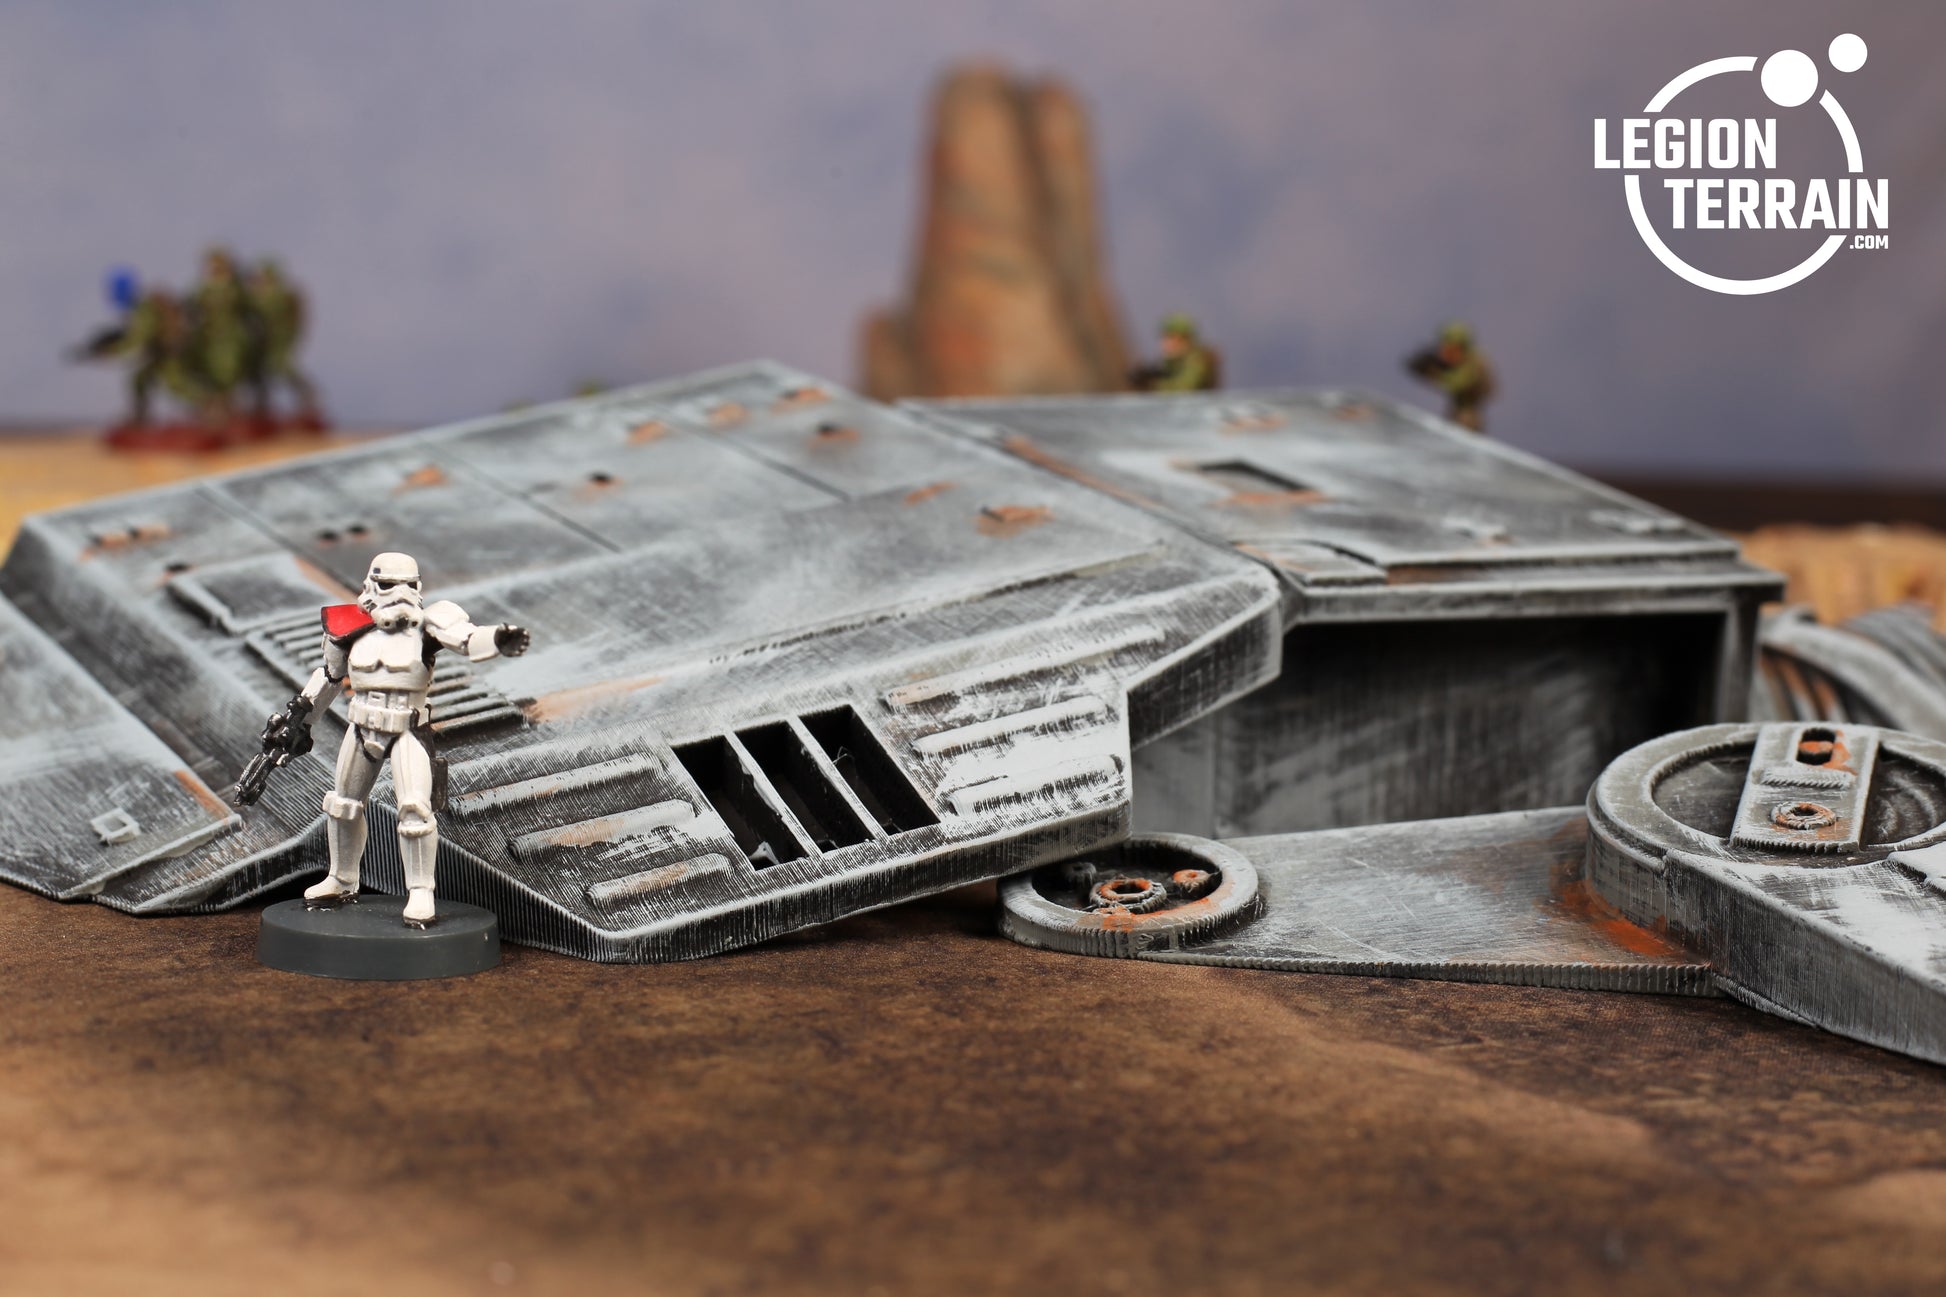 Imperial Walker Body - LegionTerrain